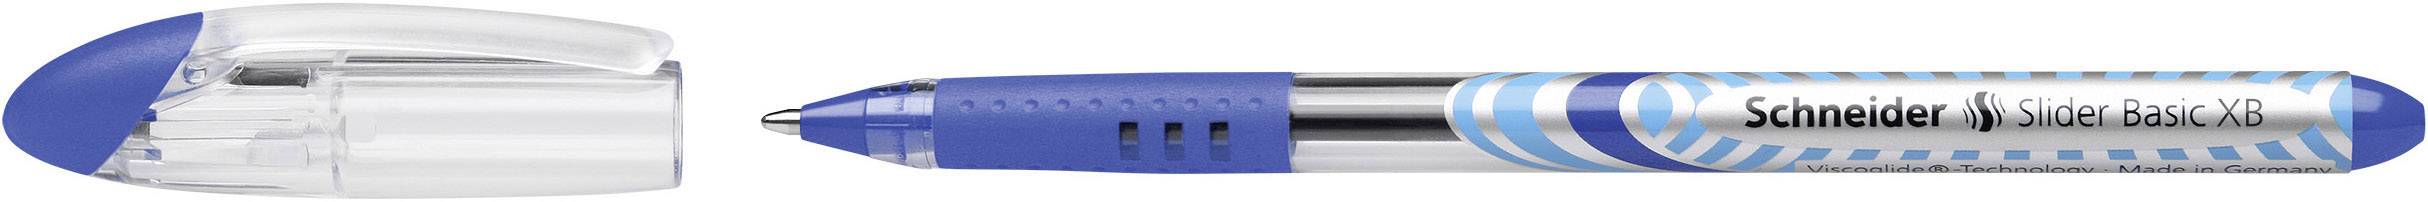 SCHNEIDER Kugelschreiber Slider Basic XB  Blau (151203)